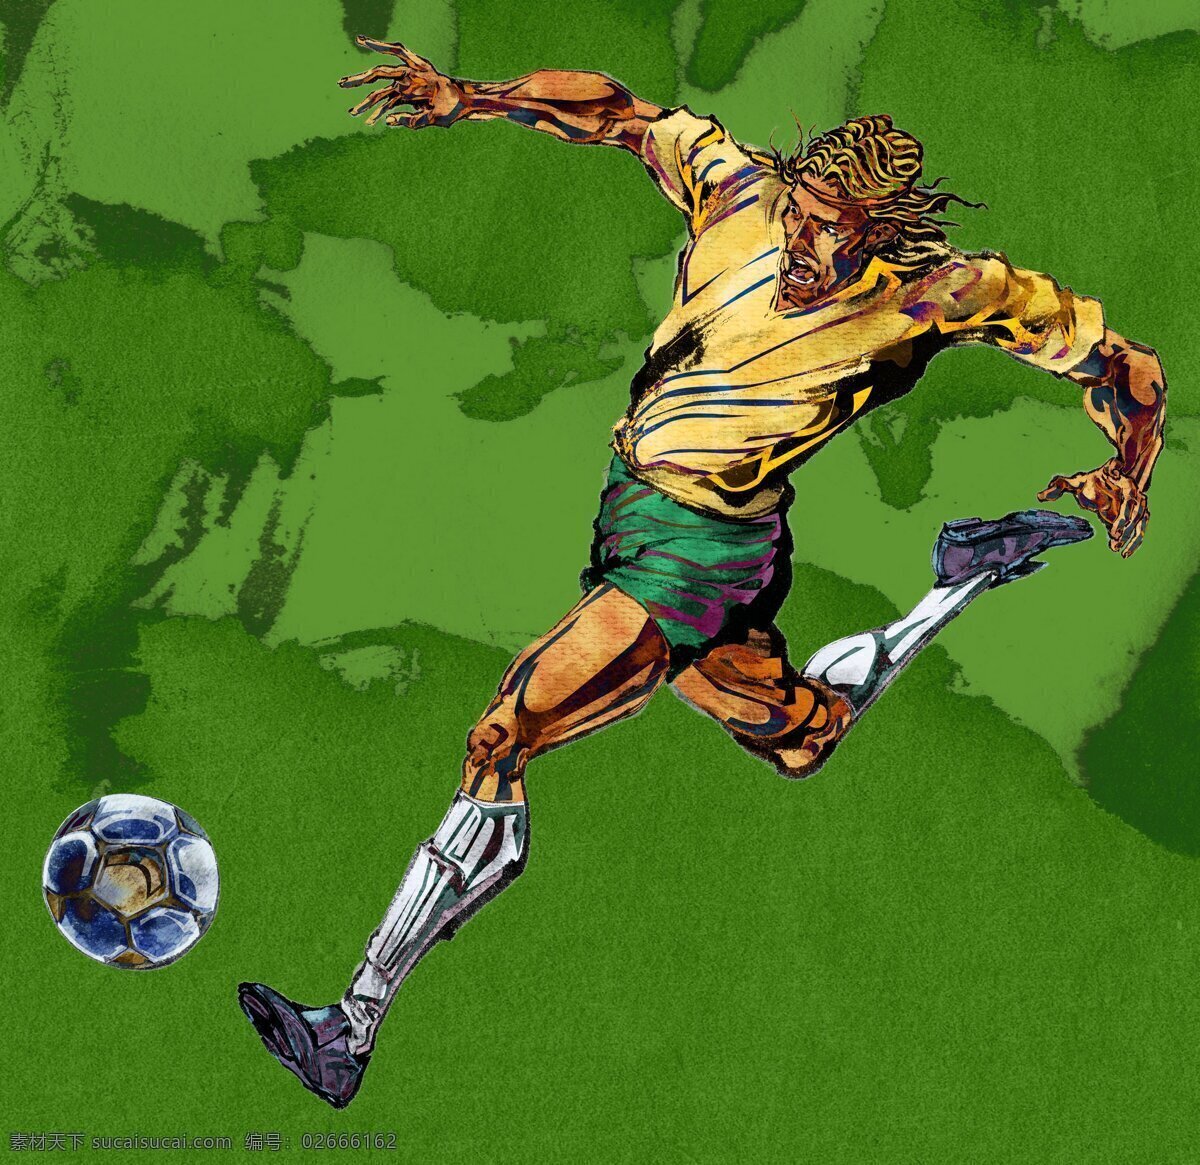 足球 世界杯 插 画集 2014 巴西世界杯 插画集 绿色 足球场